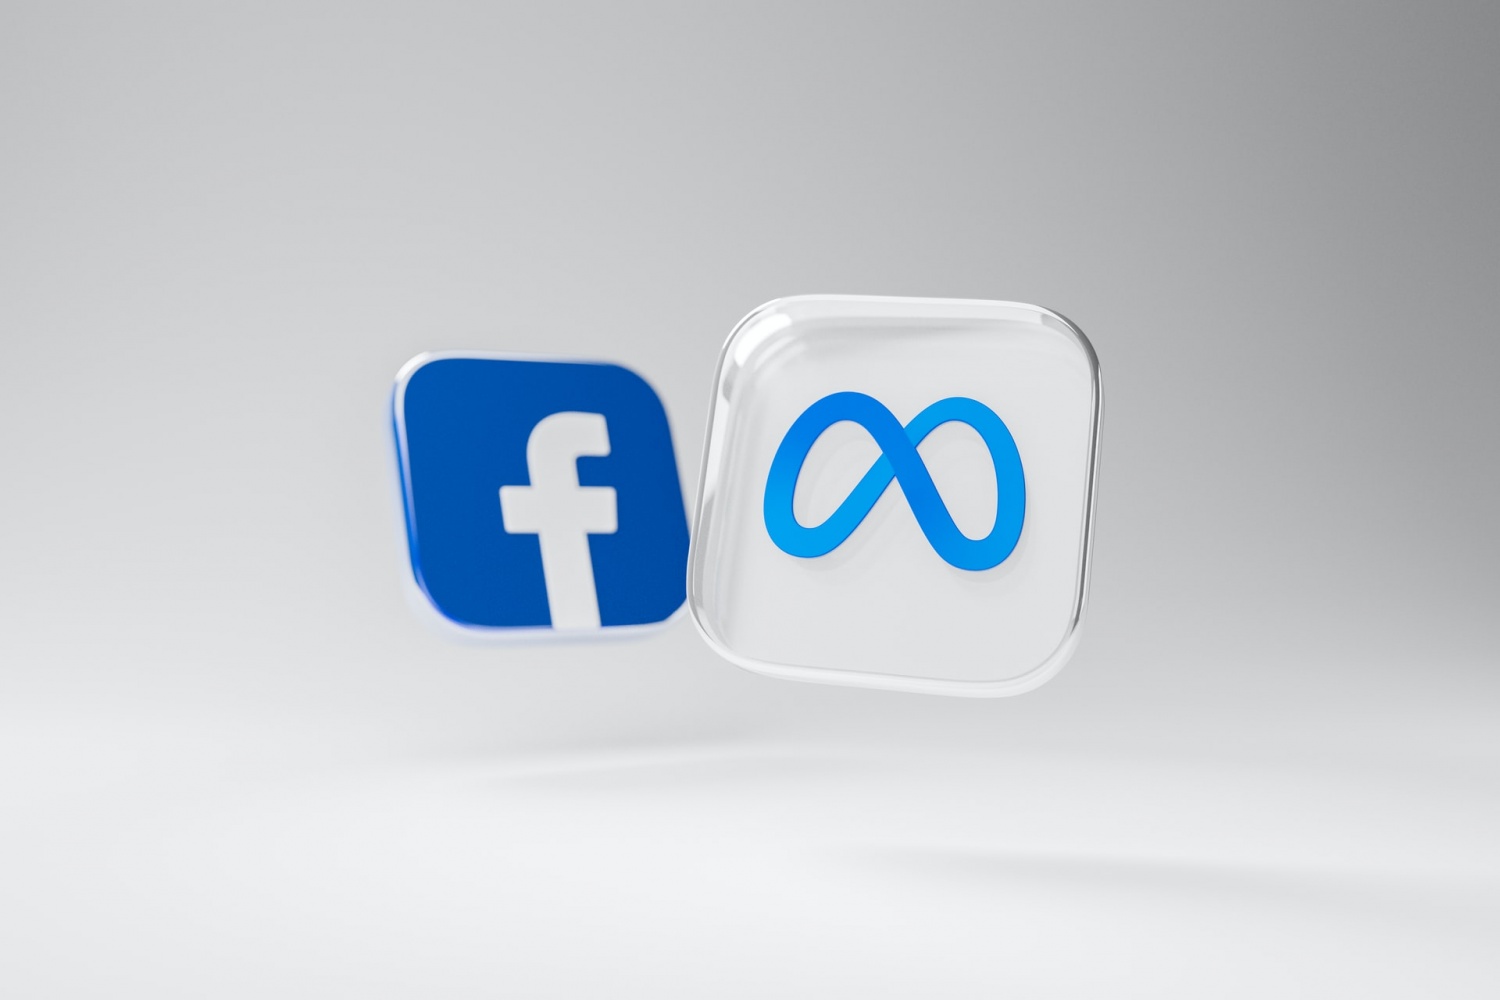 facebook groups logo